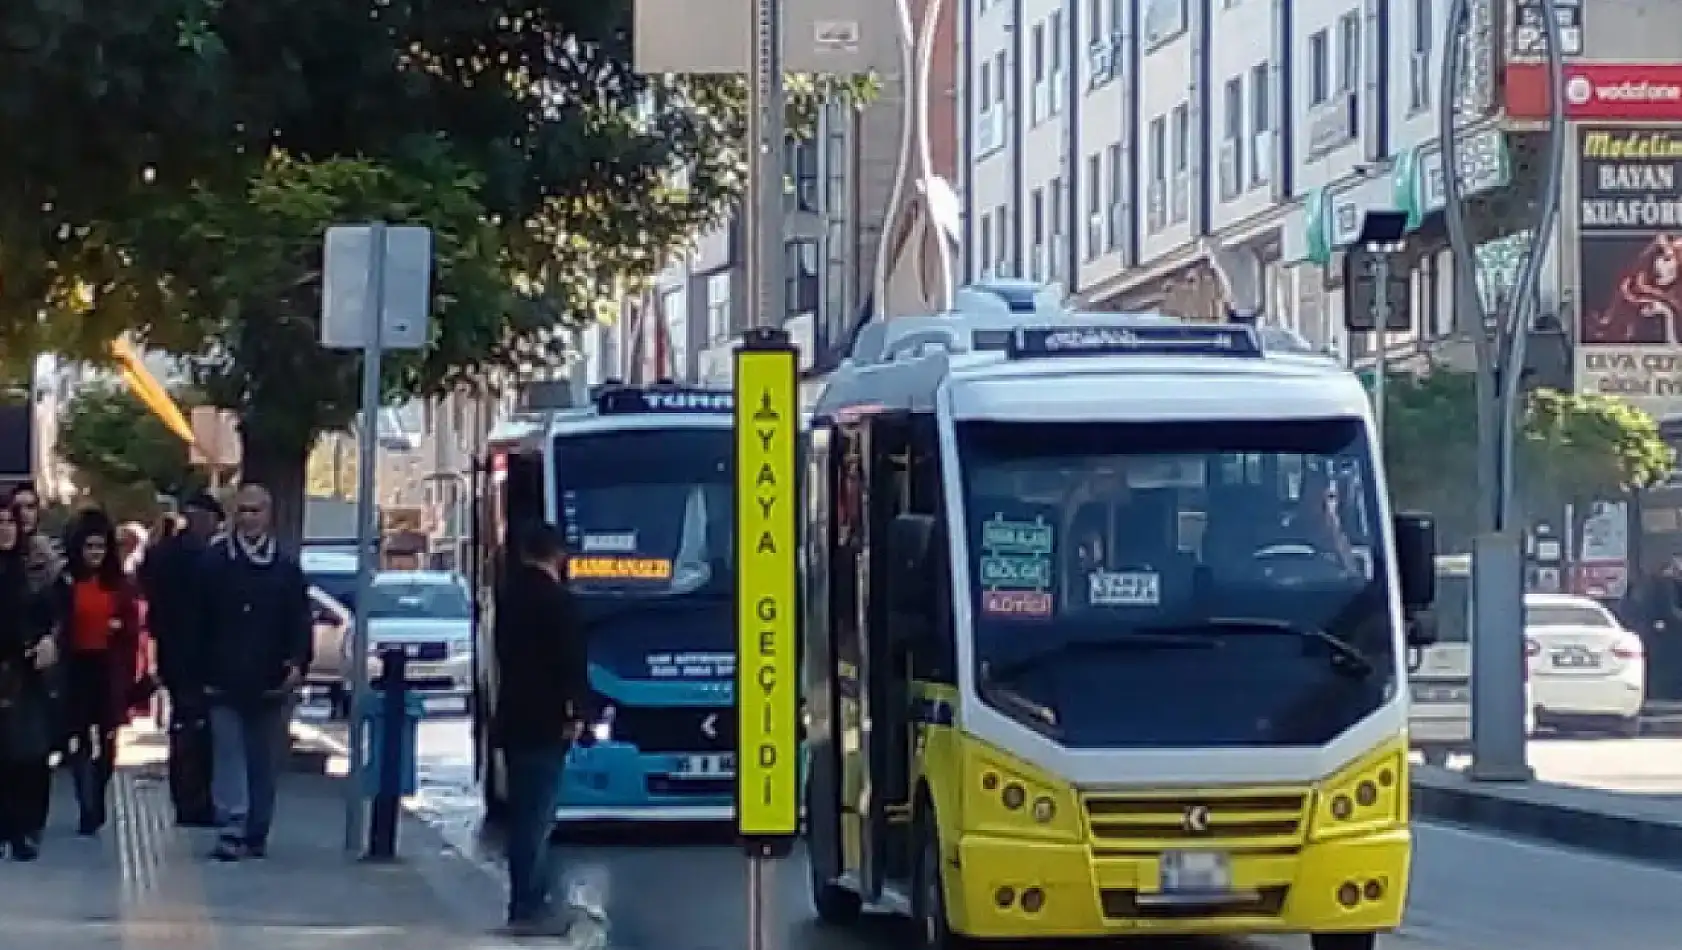 Özel halk otobüs şoförleri tepki topluyor